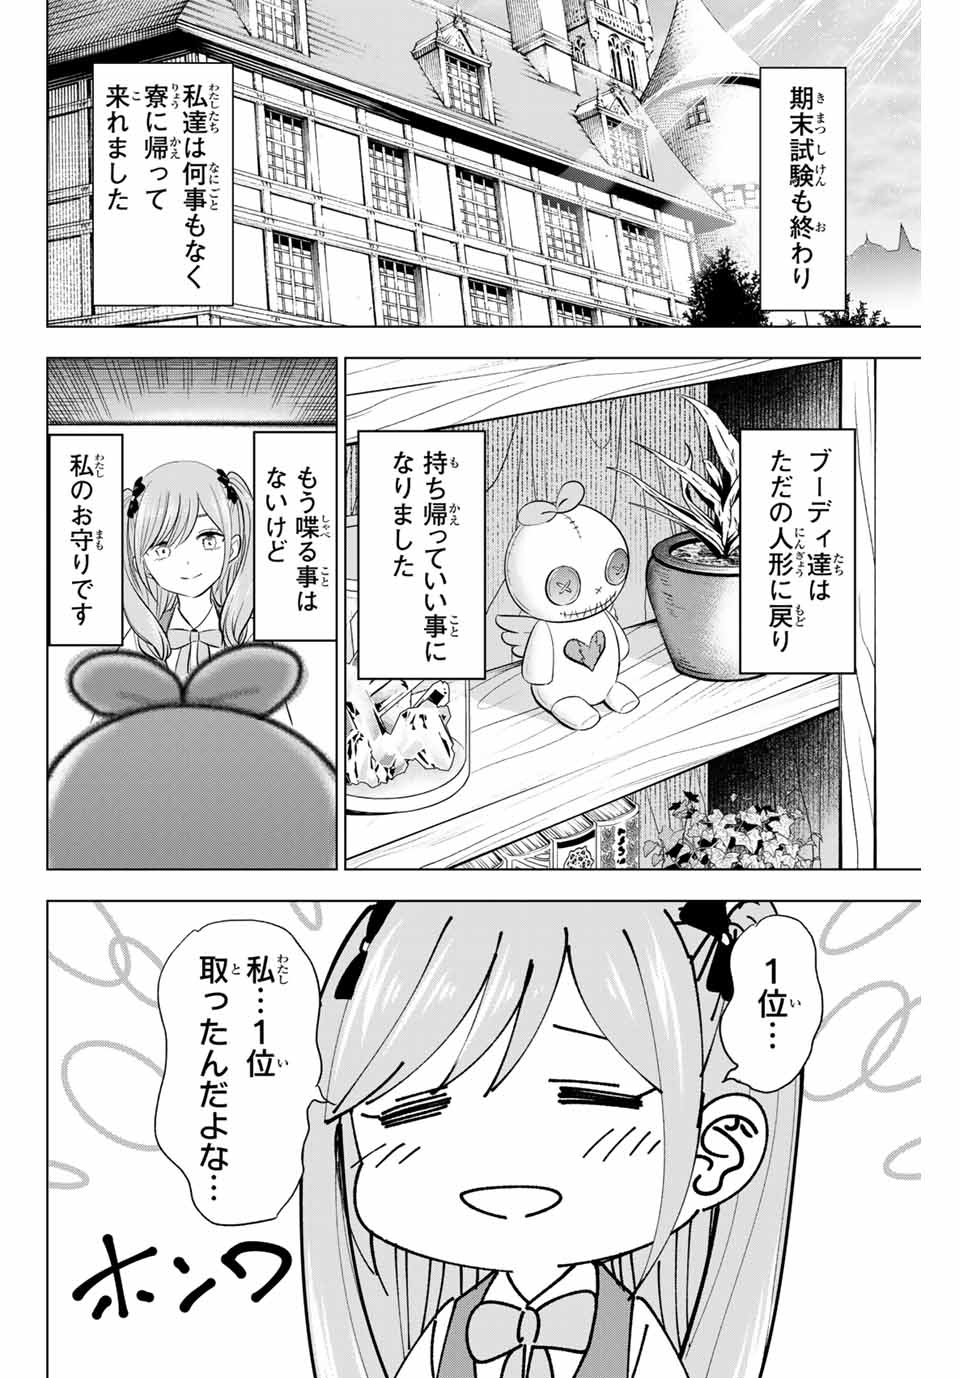 Kuroneko to Majo no Kyoushitsu - Chapter 59 - Page 2